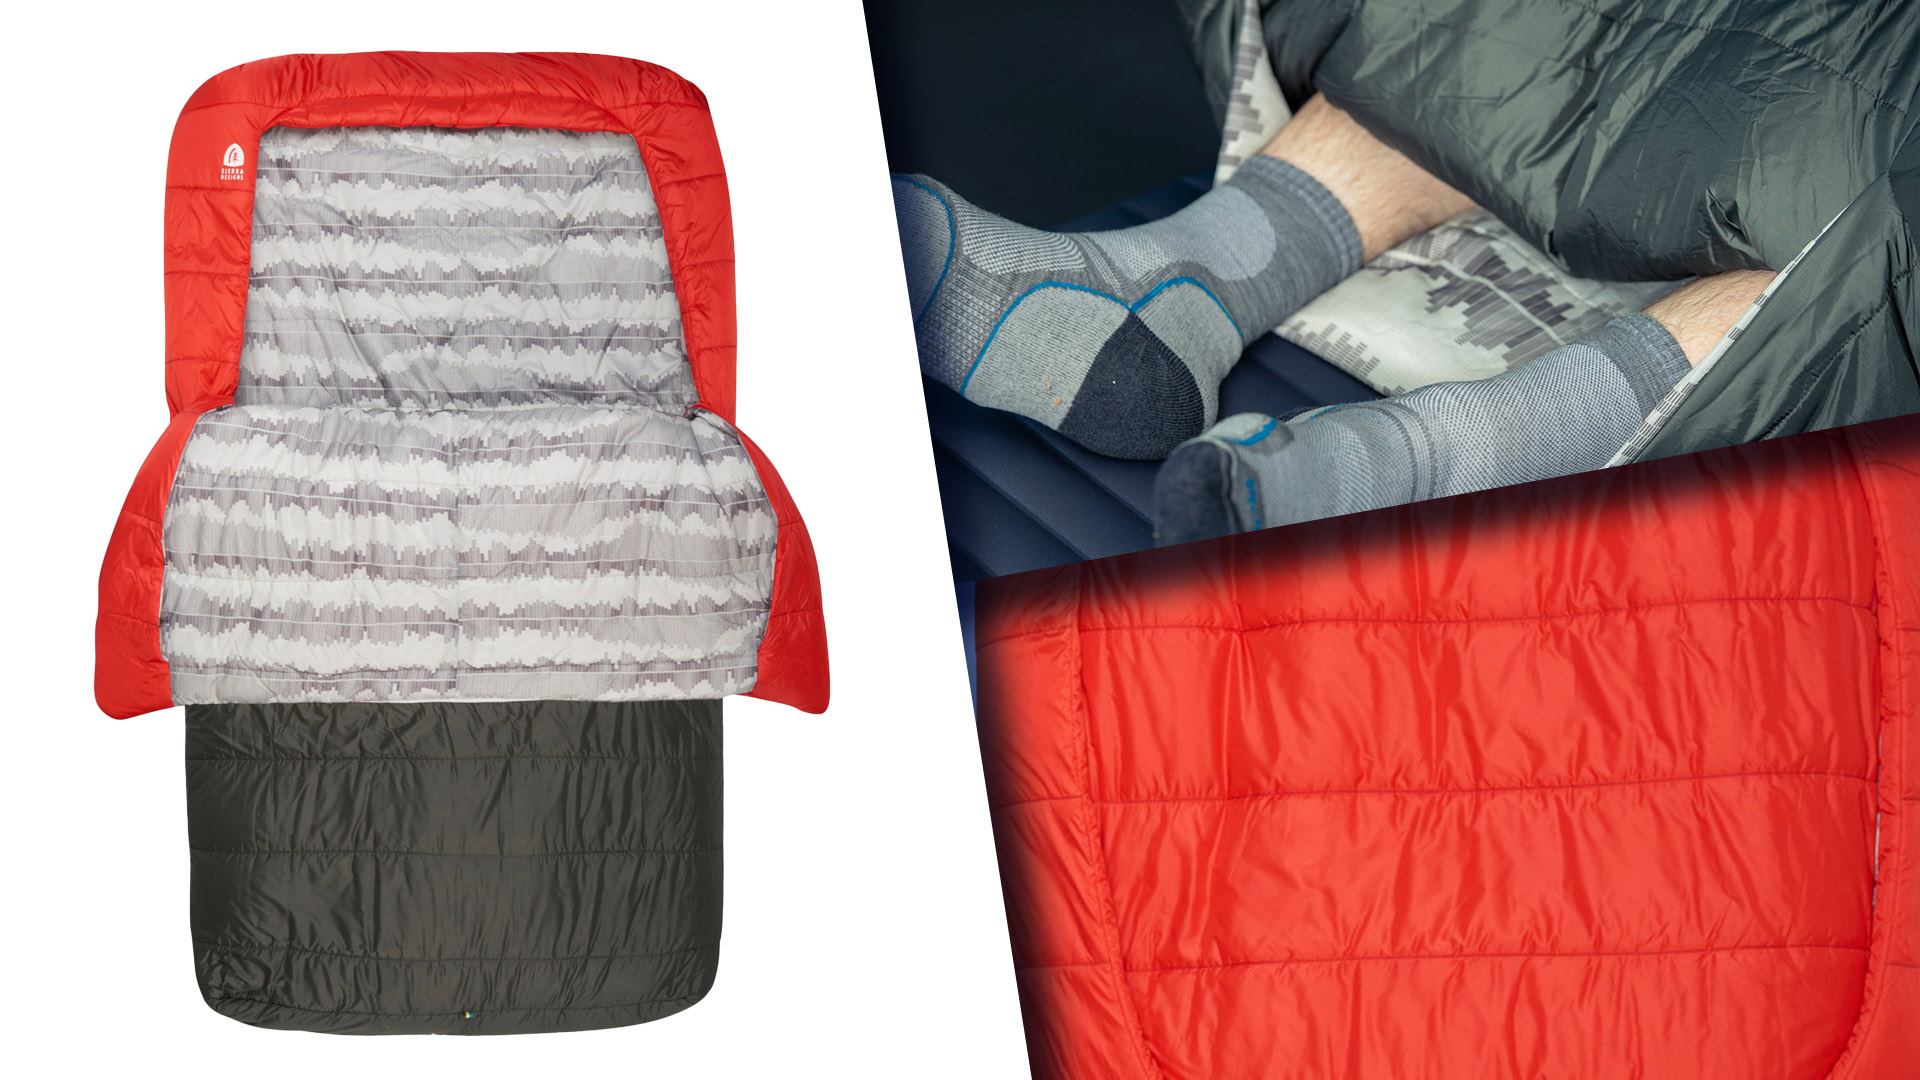 How to Choose Your Best Sierra Designs Sleep System: Sleeping Bags